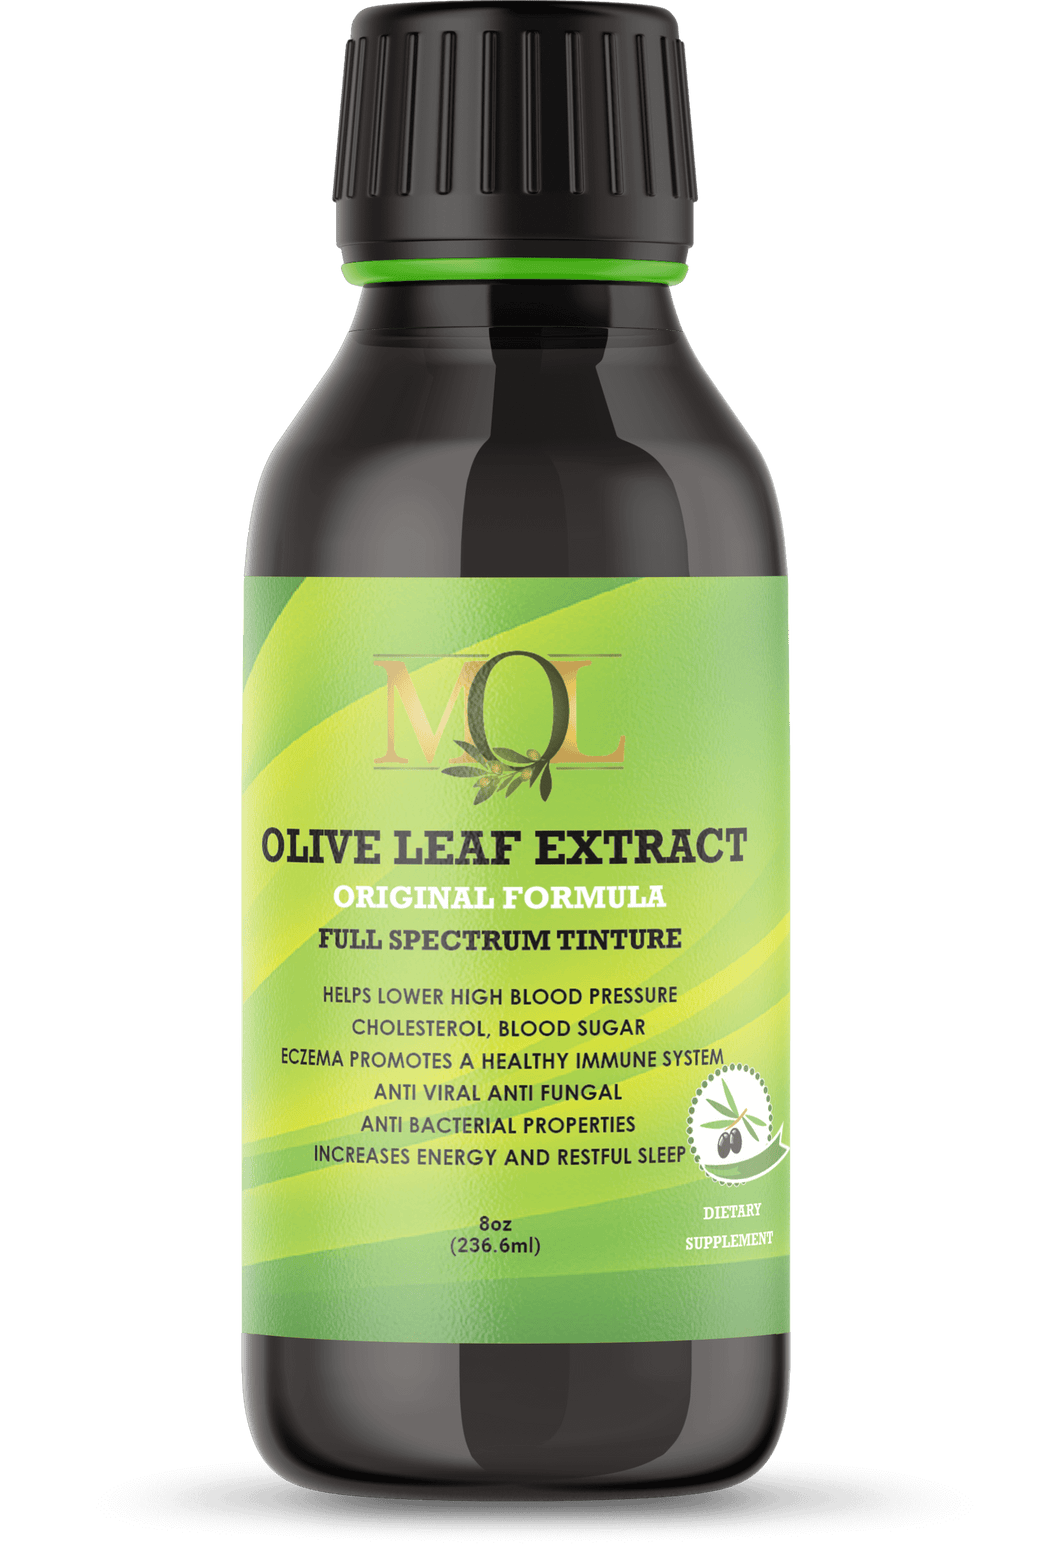 Olive Leaf Extract Original Formula 16oz - My Olive Leaf 